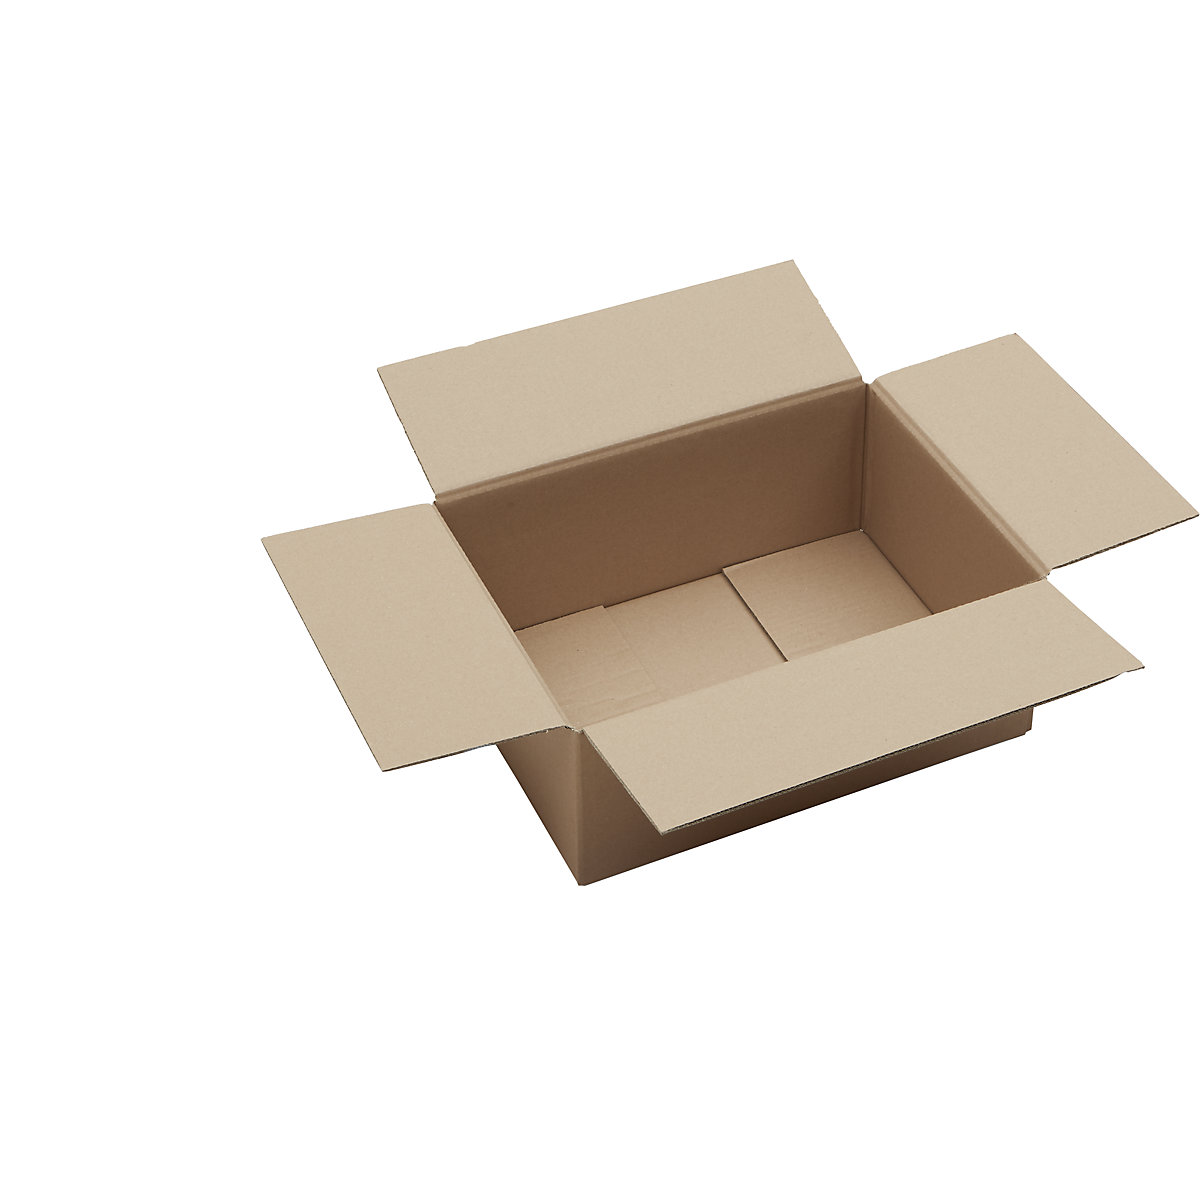 Skládací krabice z vlnité lepenky, FEFCO 0201, dvouvrstvá, bal.j. 50 ks, vnitřní rozměry 375 x 275 x 150 mm-1